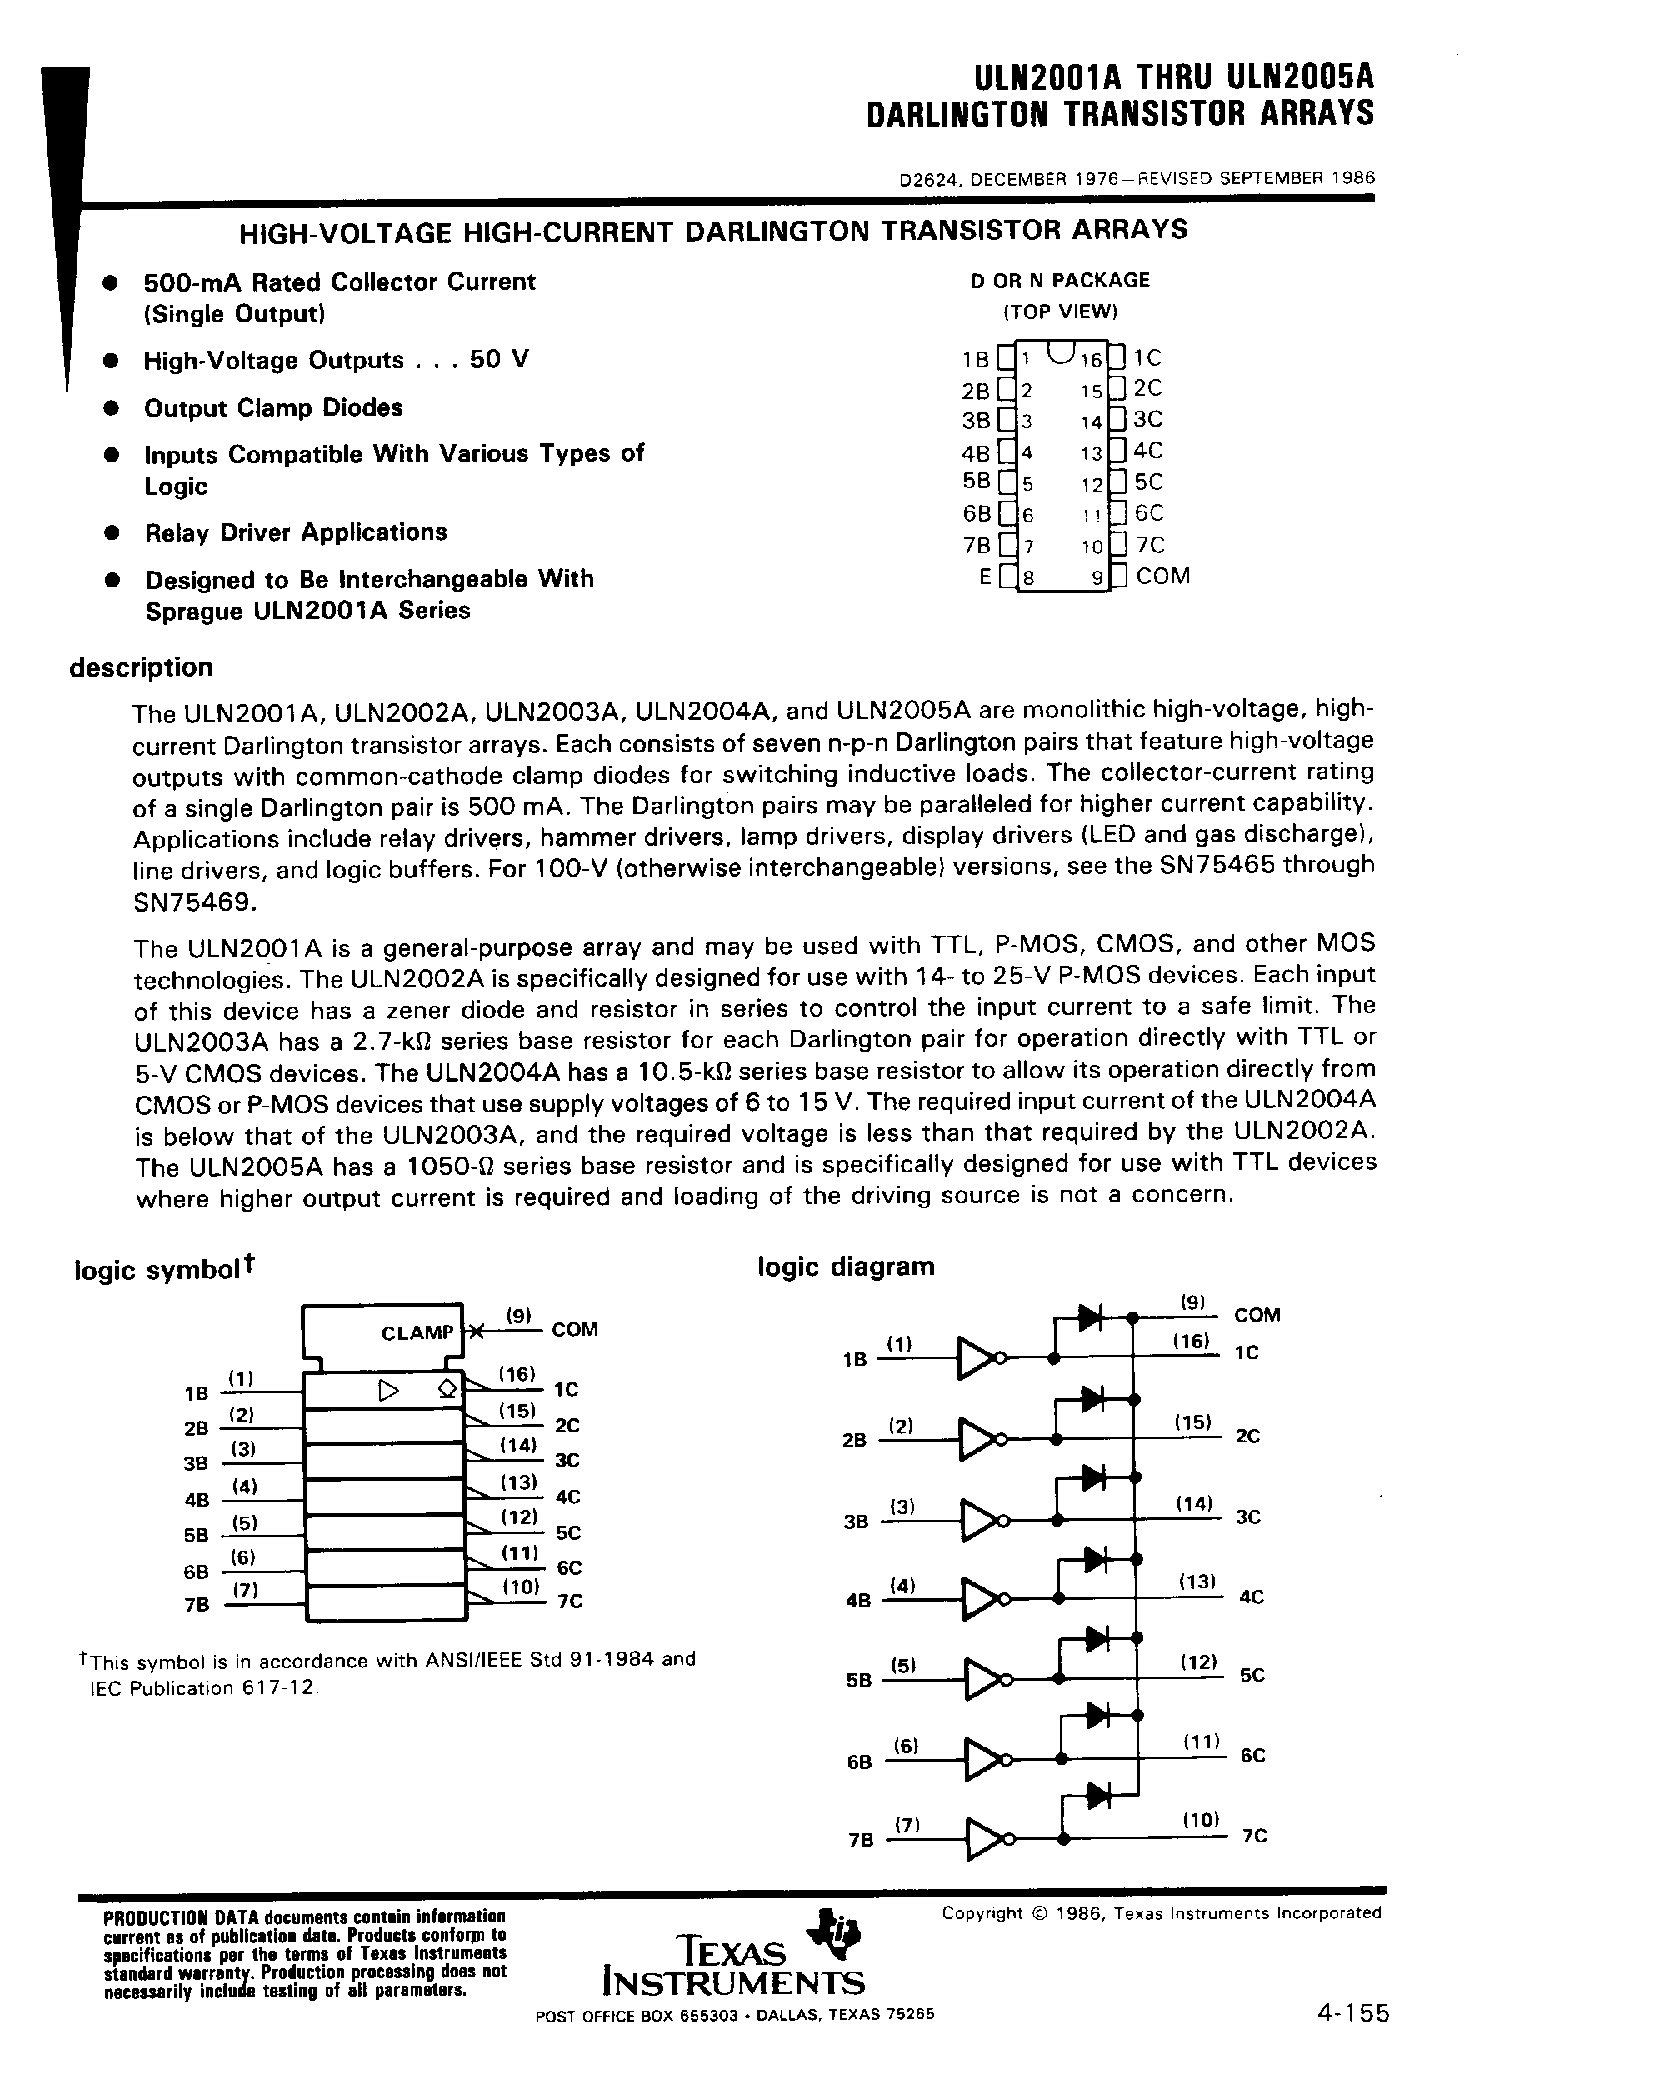 Даташит ULN2005A-(ULN2001A - ULN2005A) Darlington Transistor Arrays страница 1